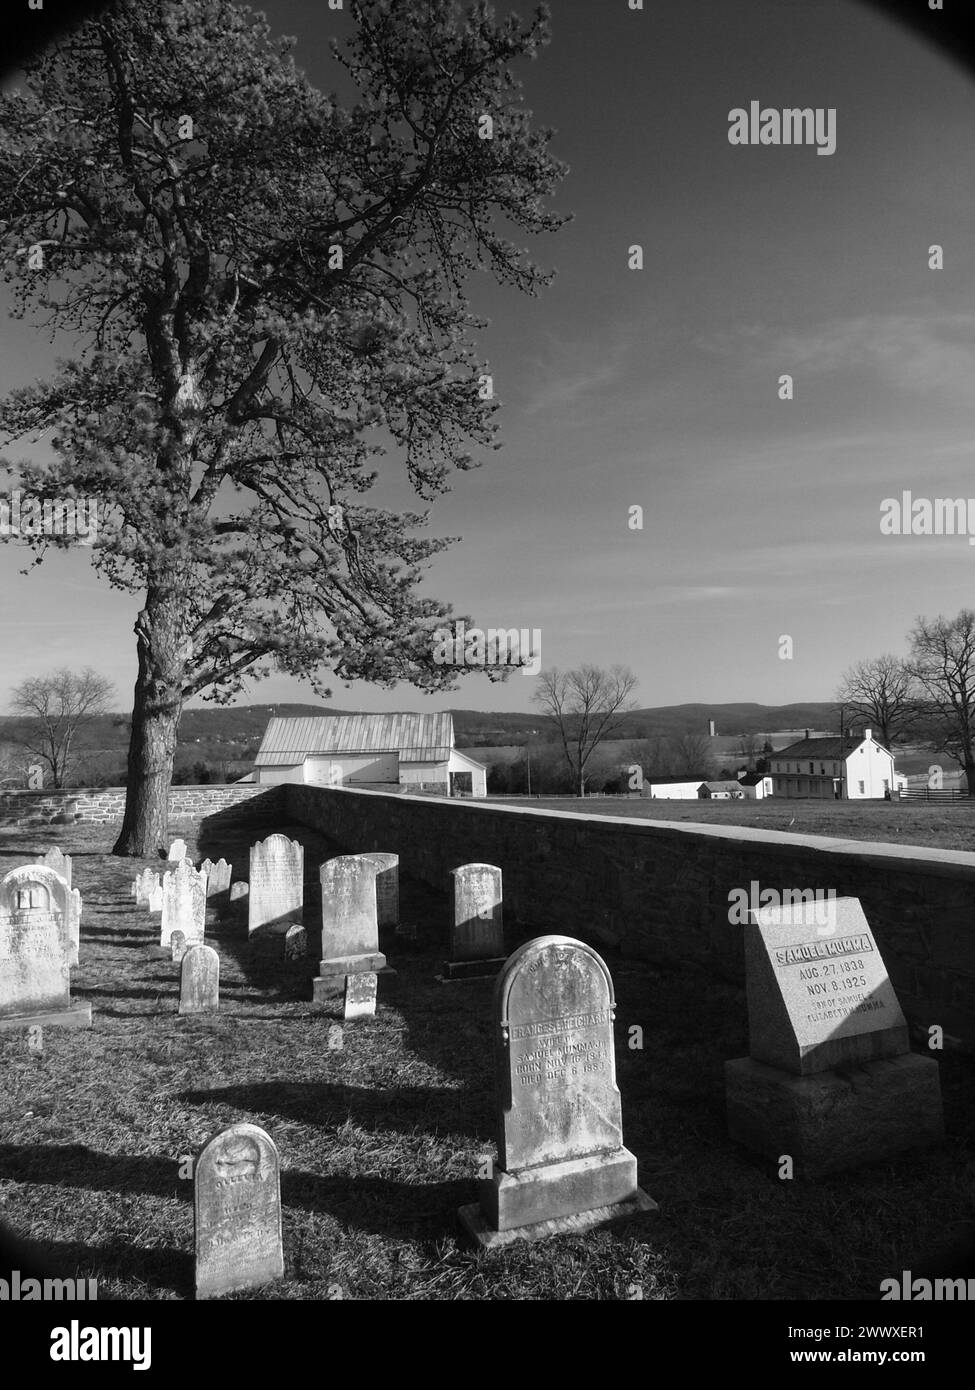 Storico cimitero della famiglia Mumma presso il campo di battaglia di Antietam vicino a Sharpsburg, Maryland. Immagini in bianco e nero raffigurano anche tipiche recinzioni in legno. Foto Stock